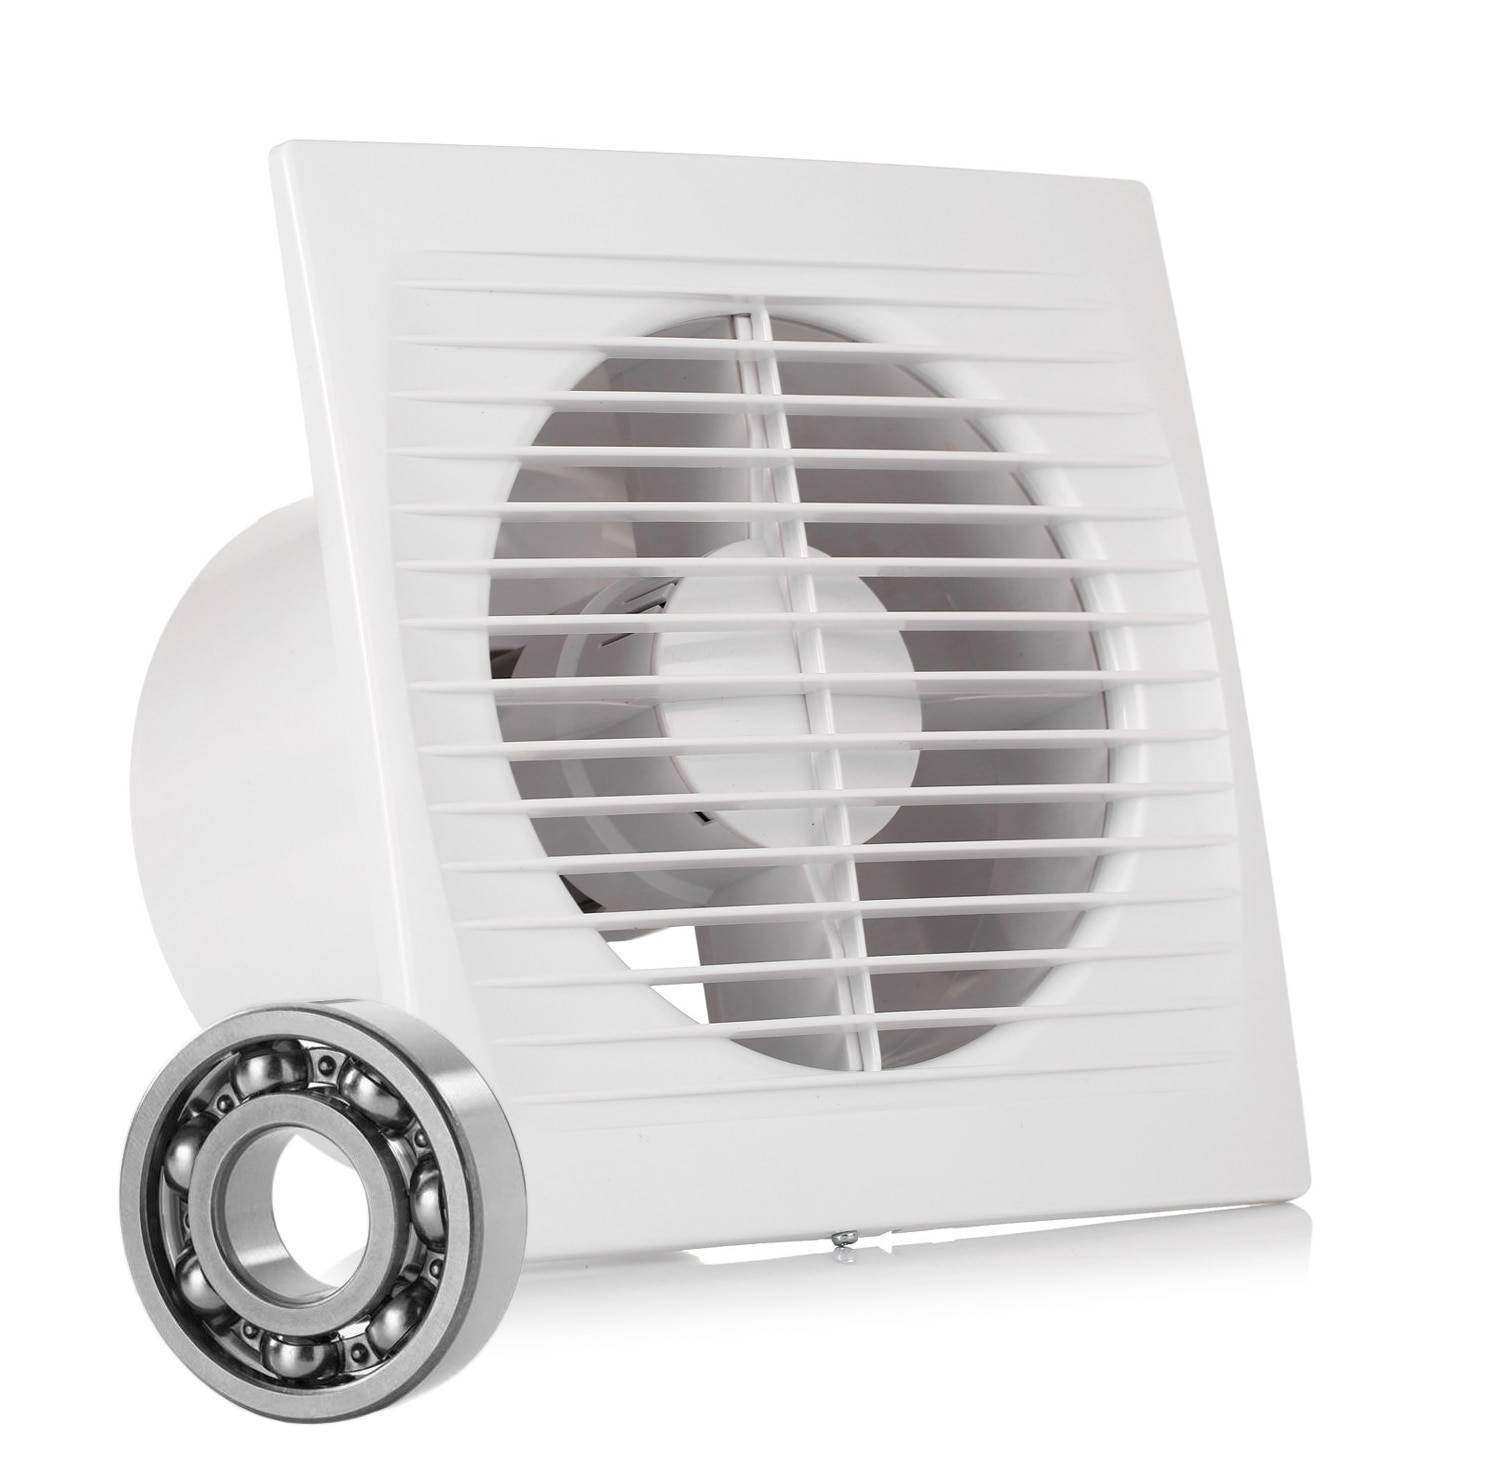 Вентилятор для ванной бесшумный с обратным клапаном: устройство, выбор, особенности установки – советы по ремонту